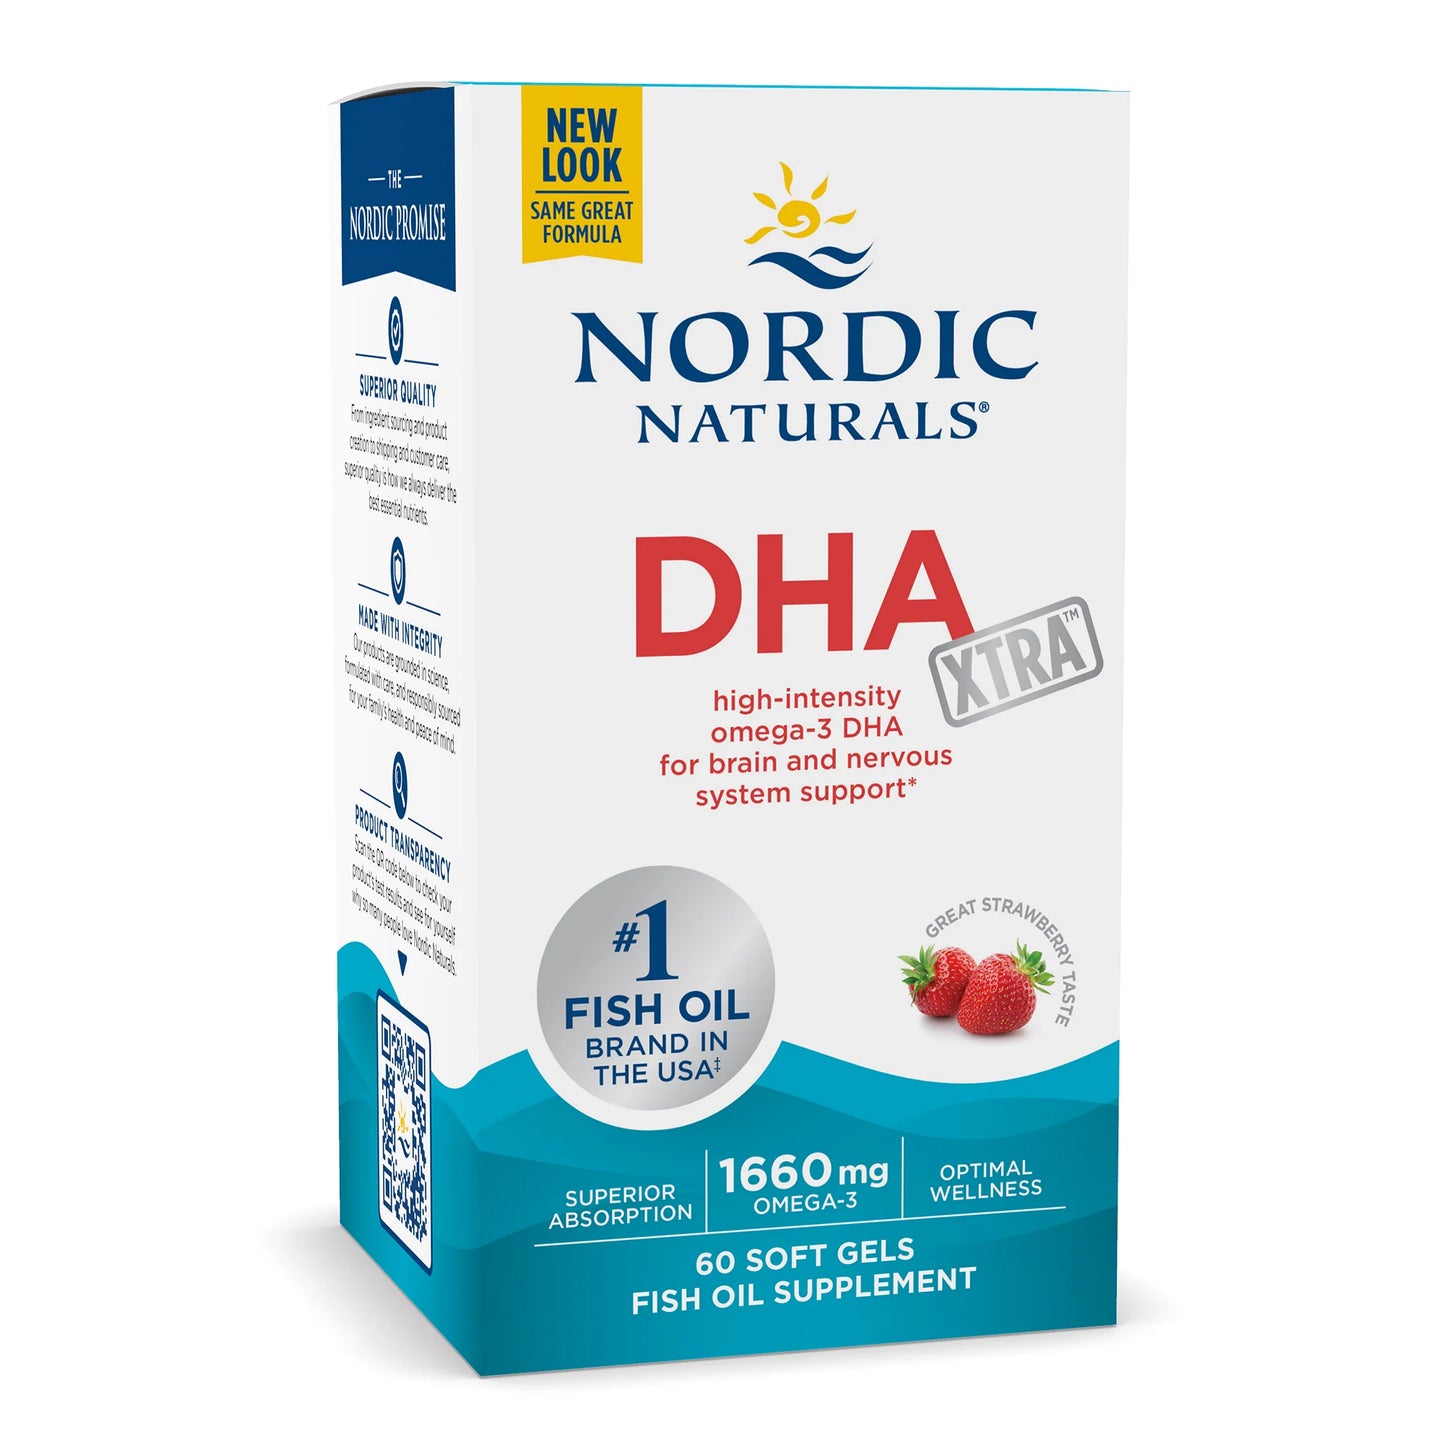 Nordic Naturals DHA XTRA 60 Soft Gels